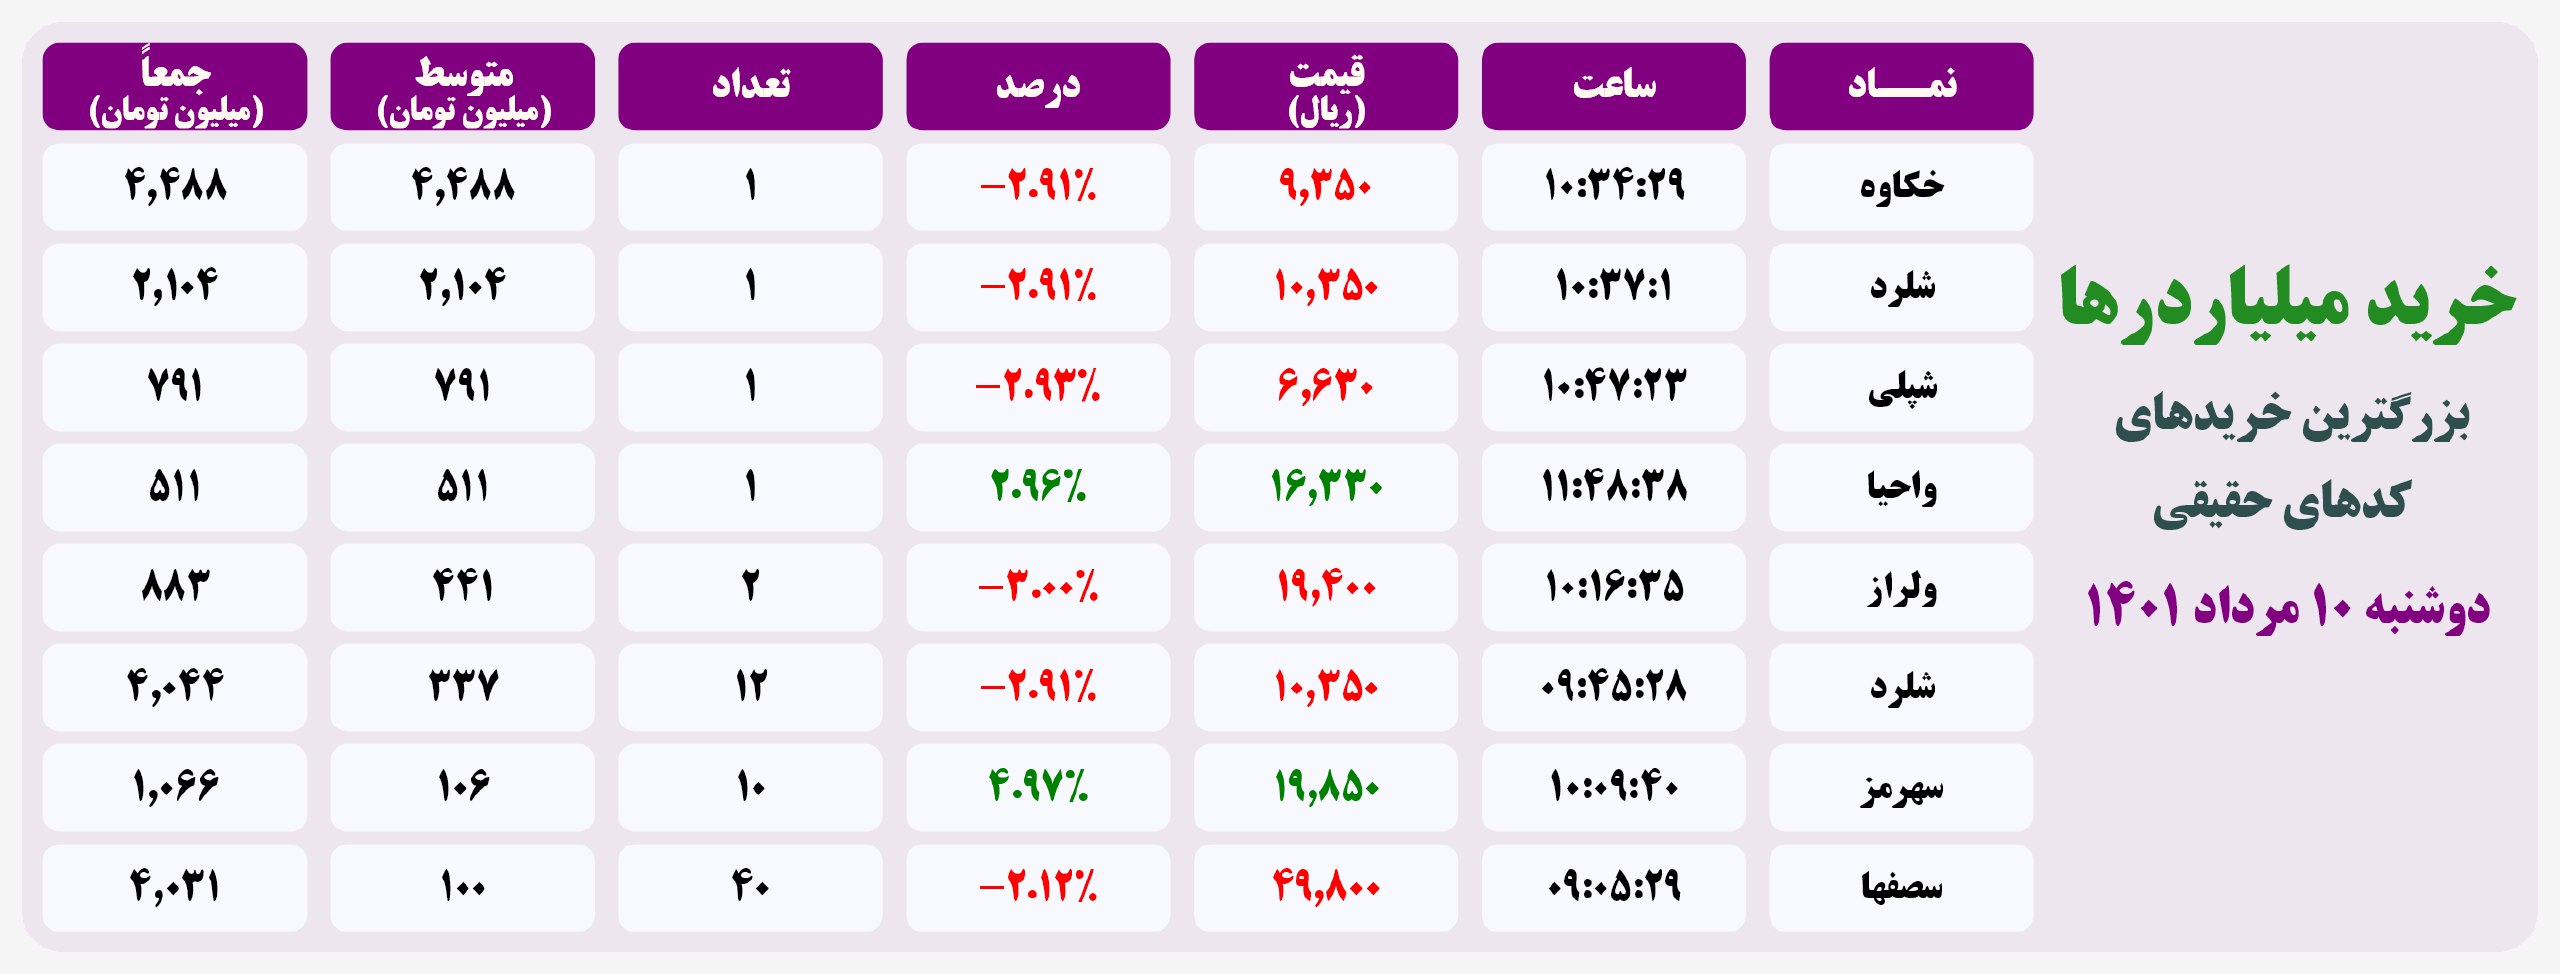 فیلتر خریدهای قابل توجه ۲۰ اردیبهشت ۱۴۰۱ بورس تهران